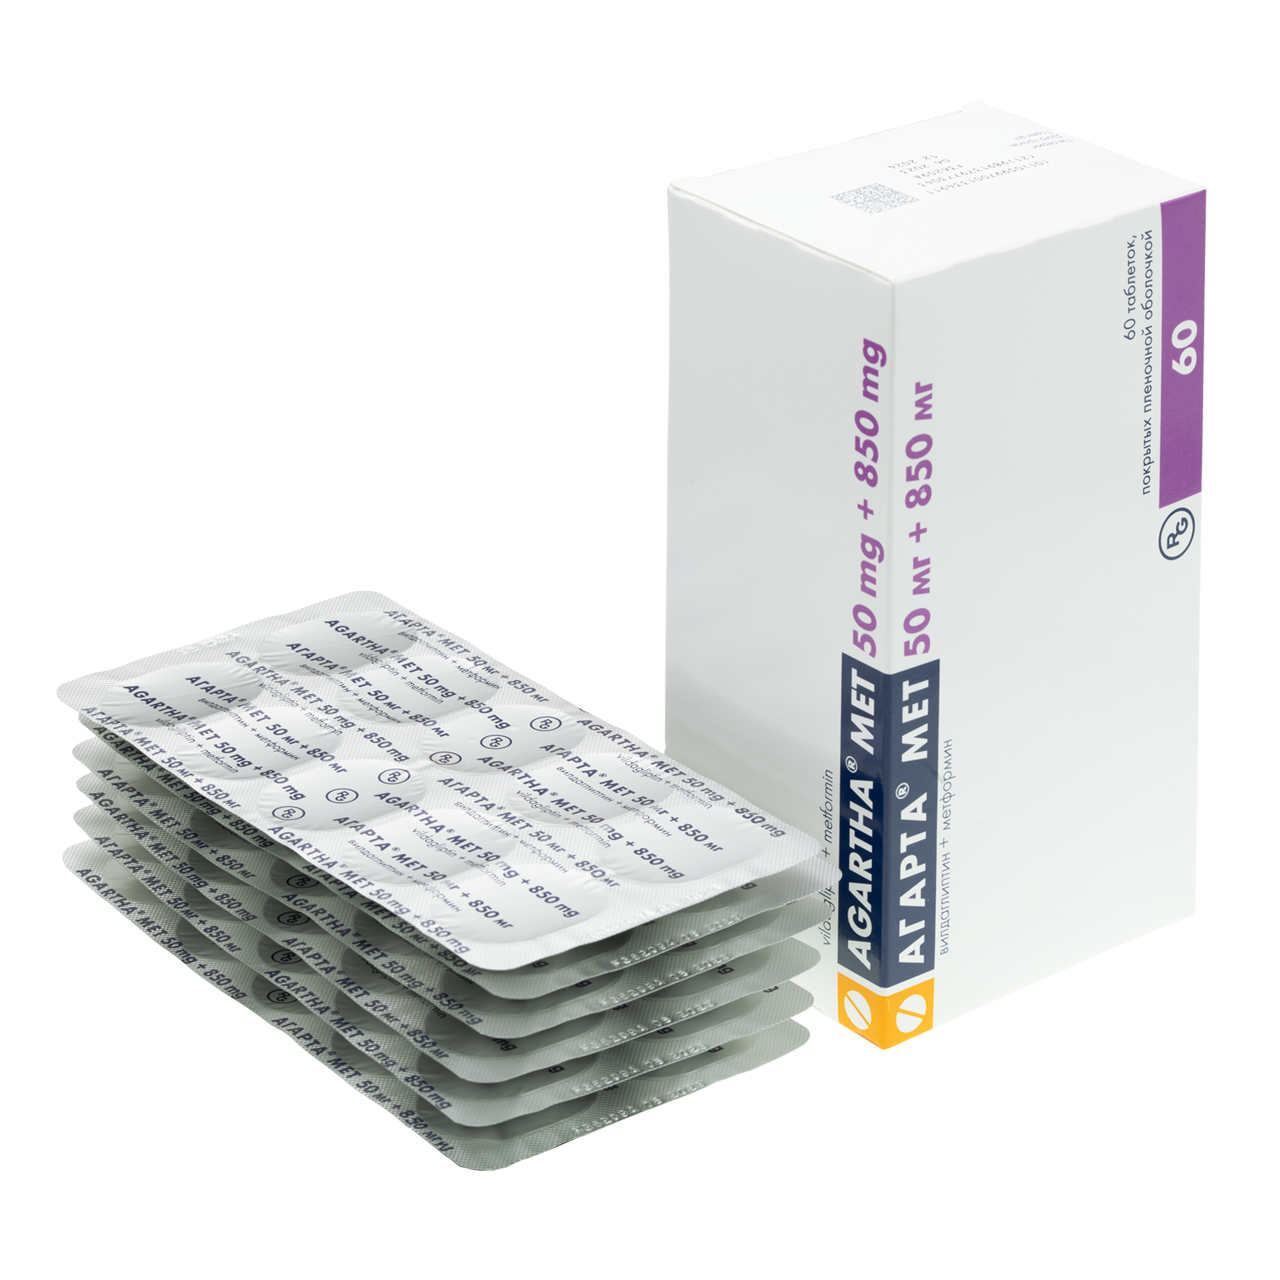 Агарта® Мет (Вилдаглиптин + Метформин) таблетки, покрытые пленочной .